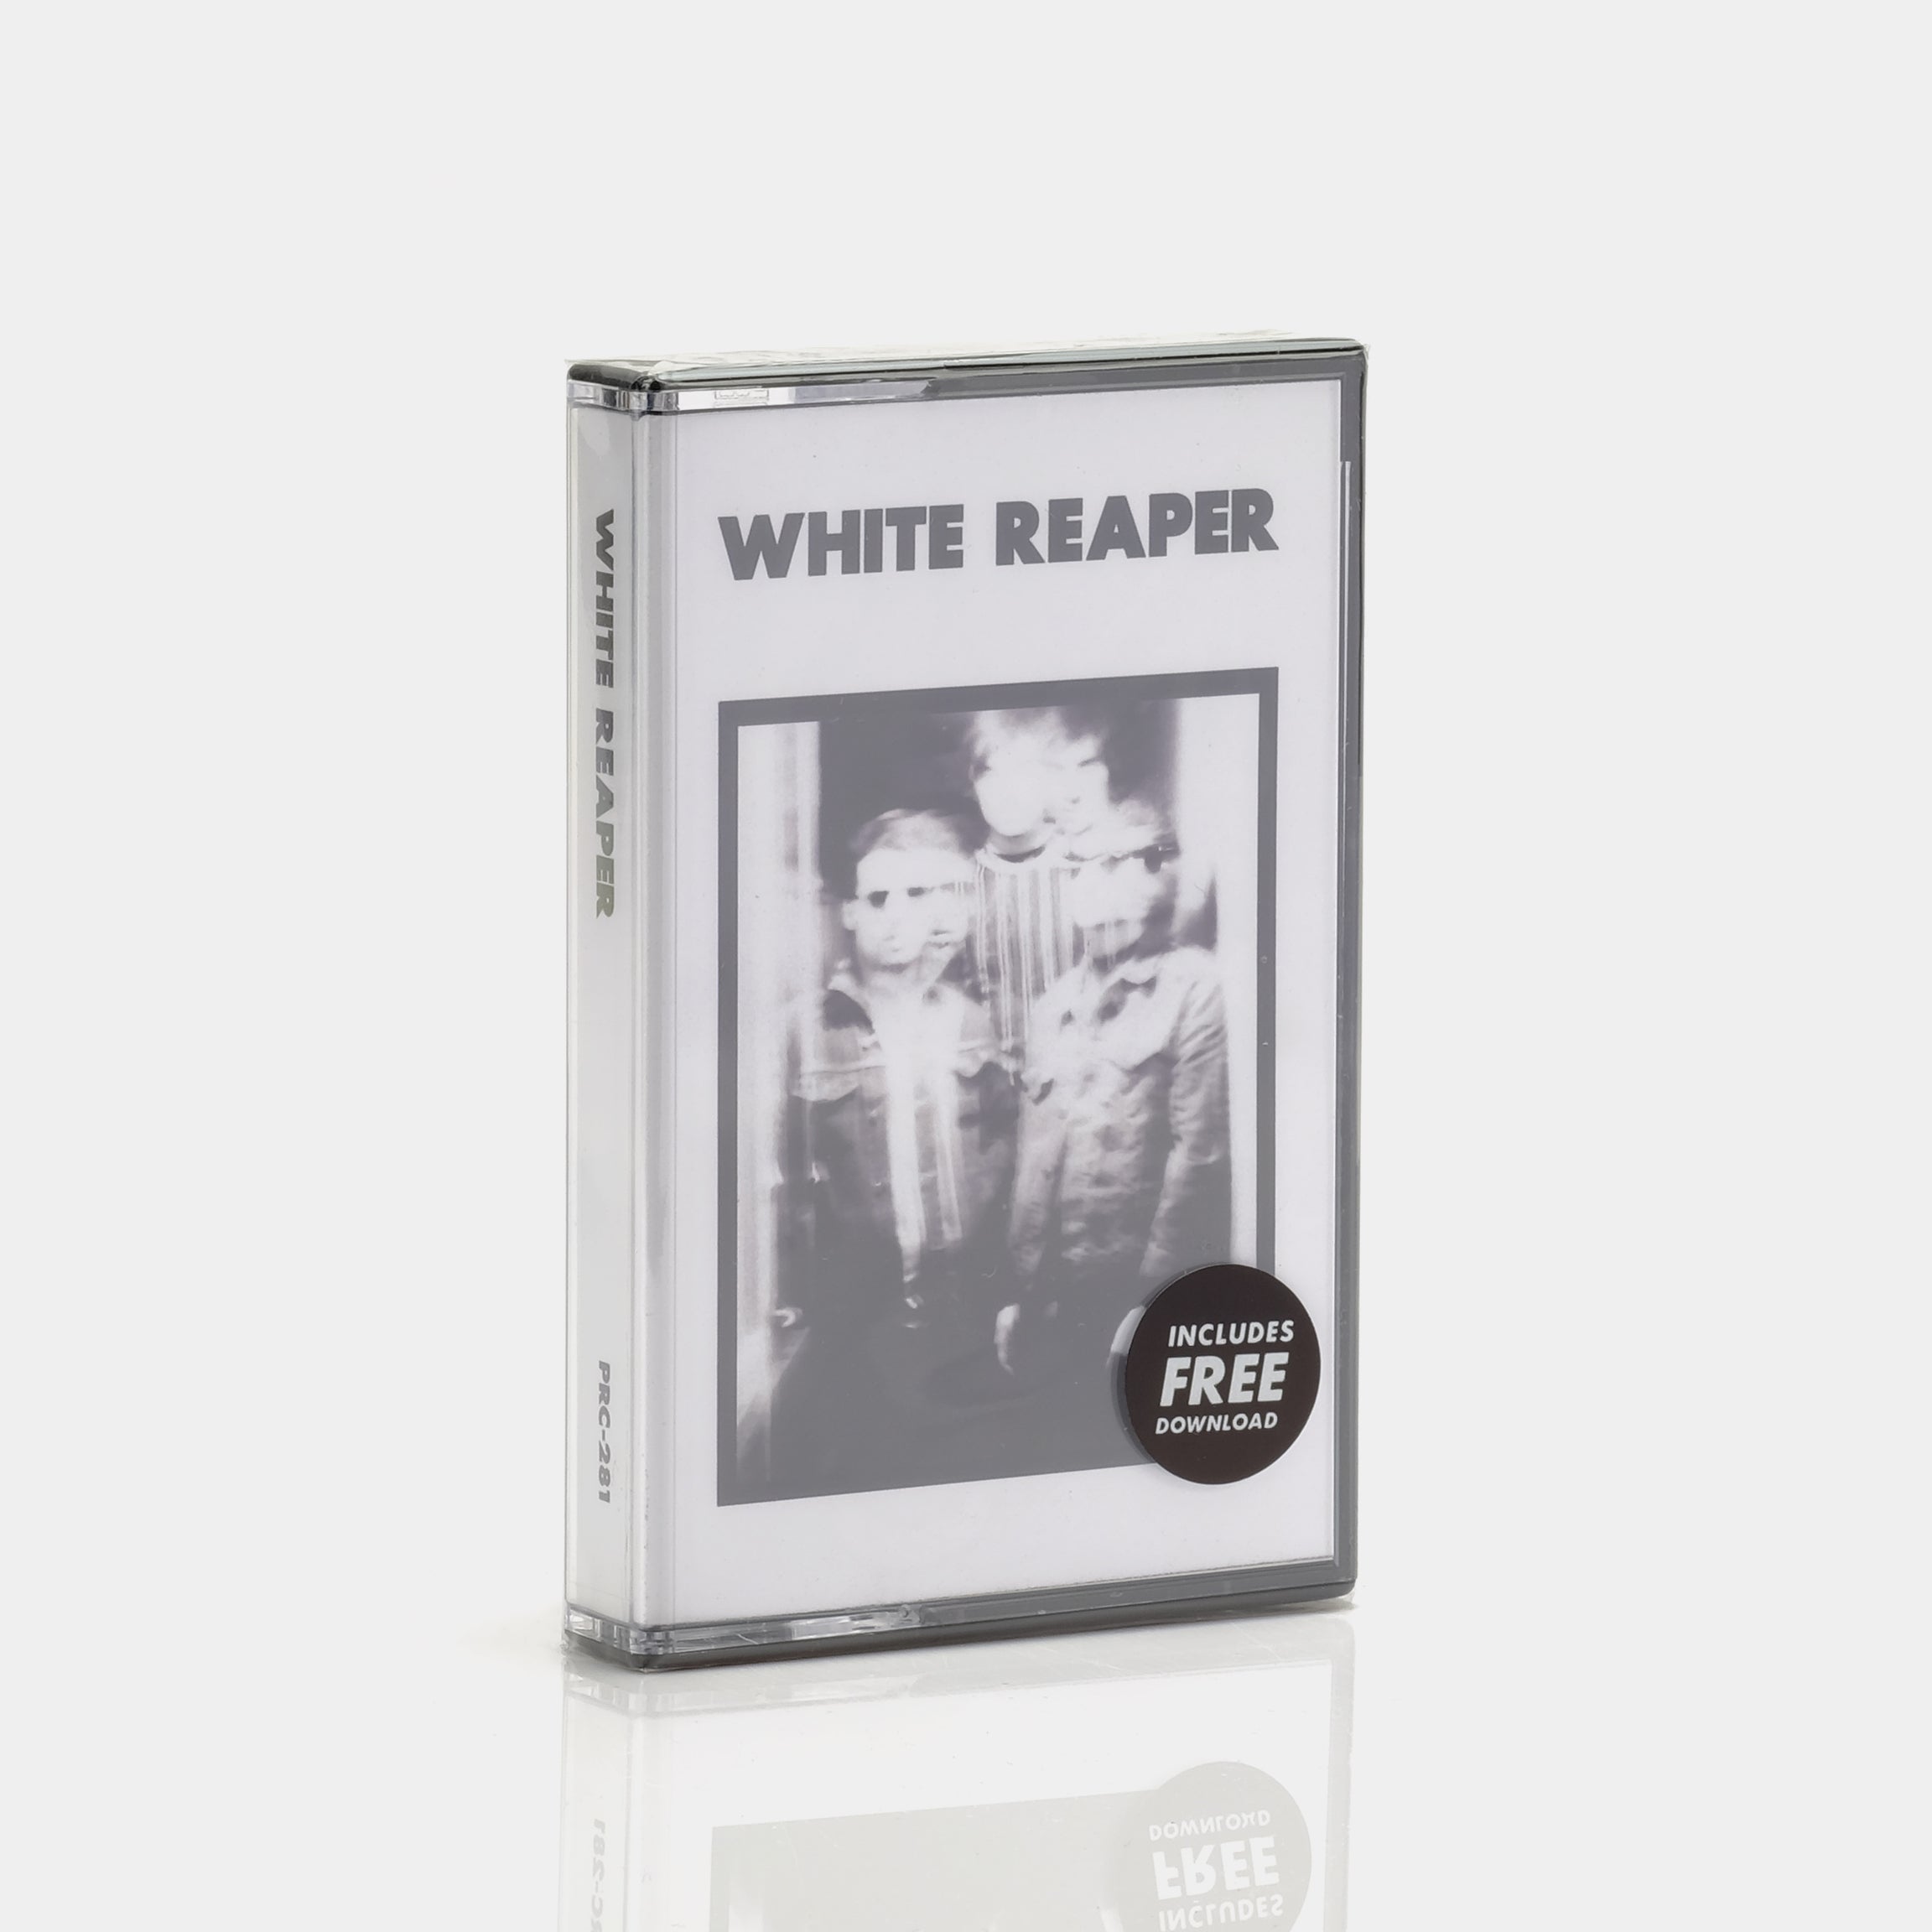 White Reaper - White Reaper Cassette Tape